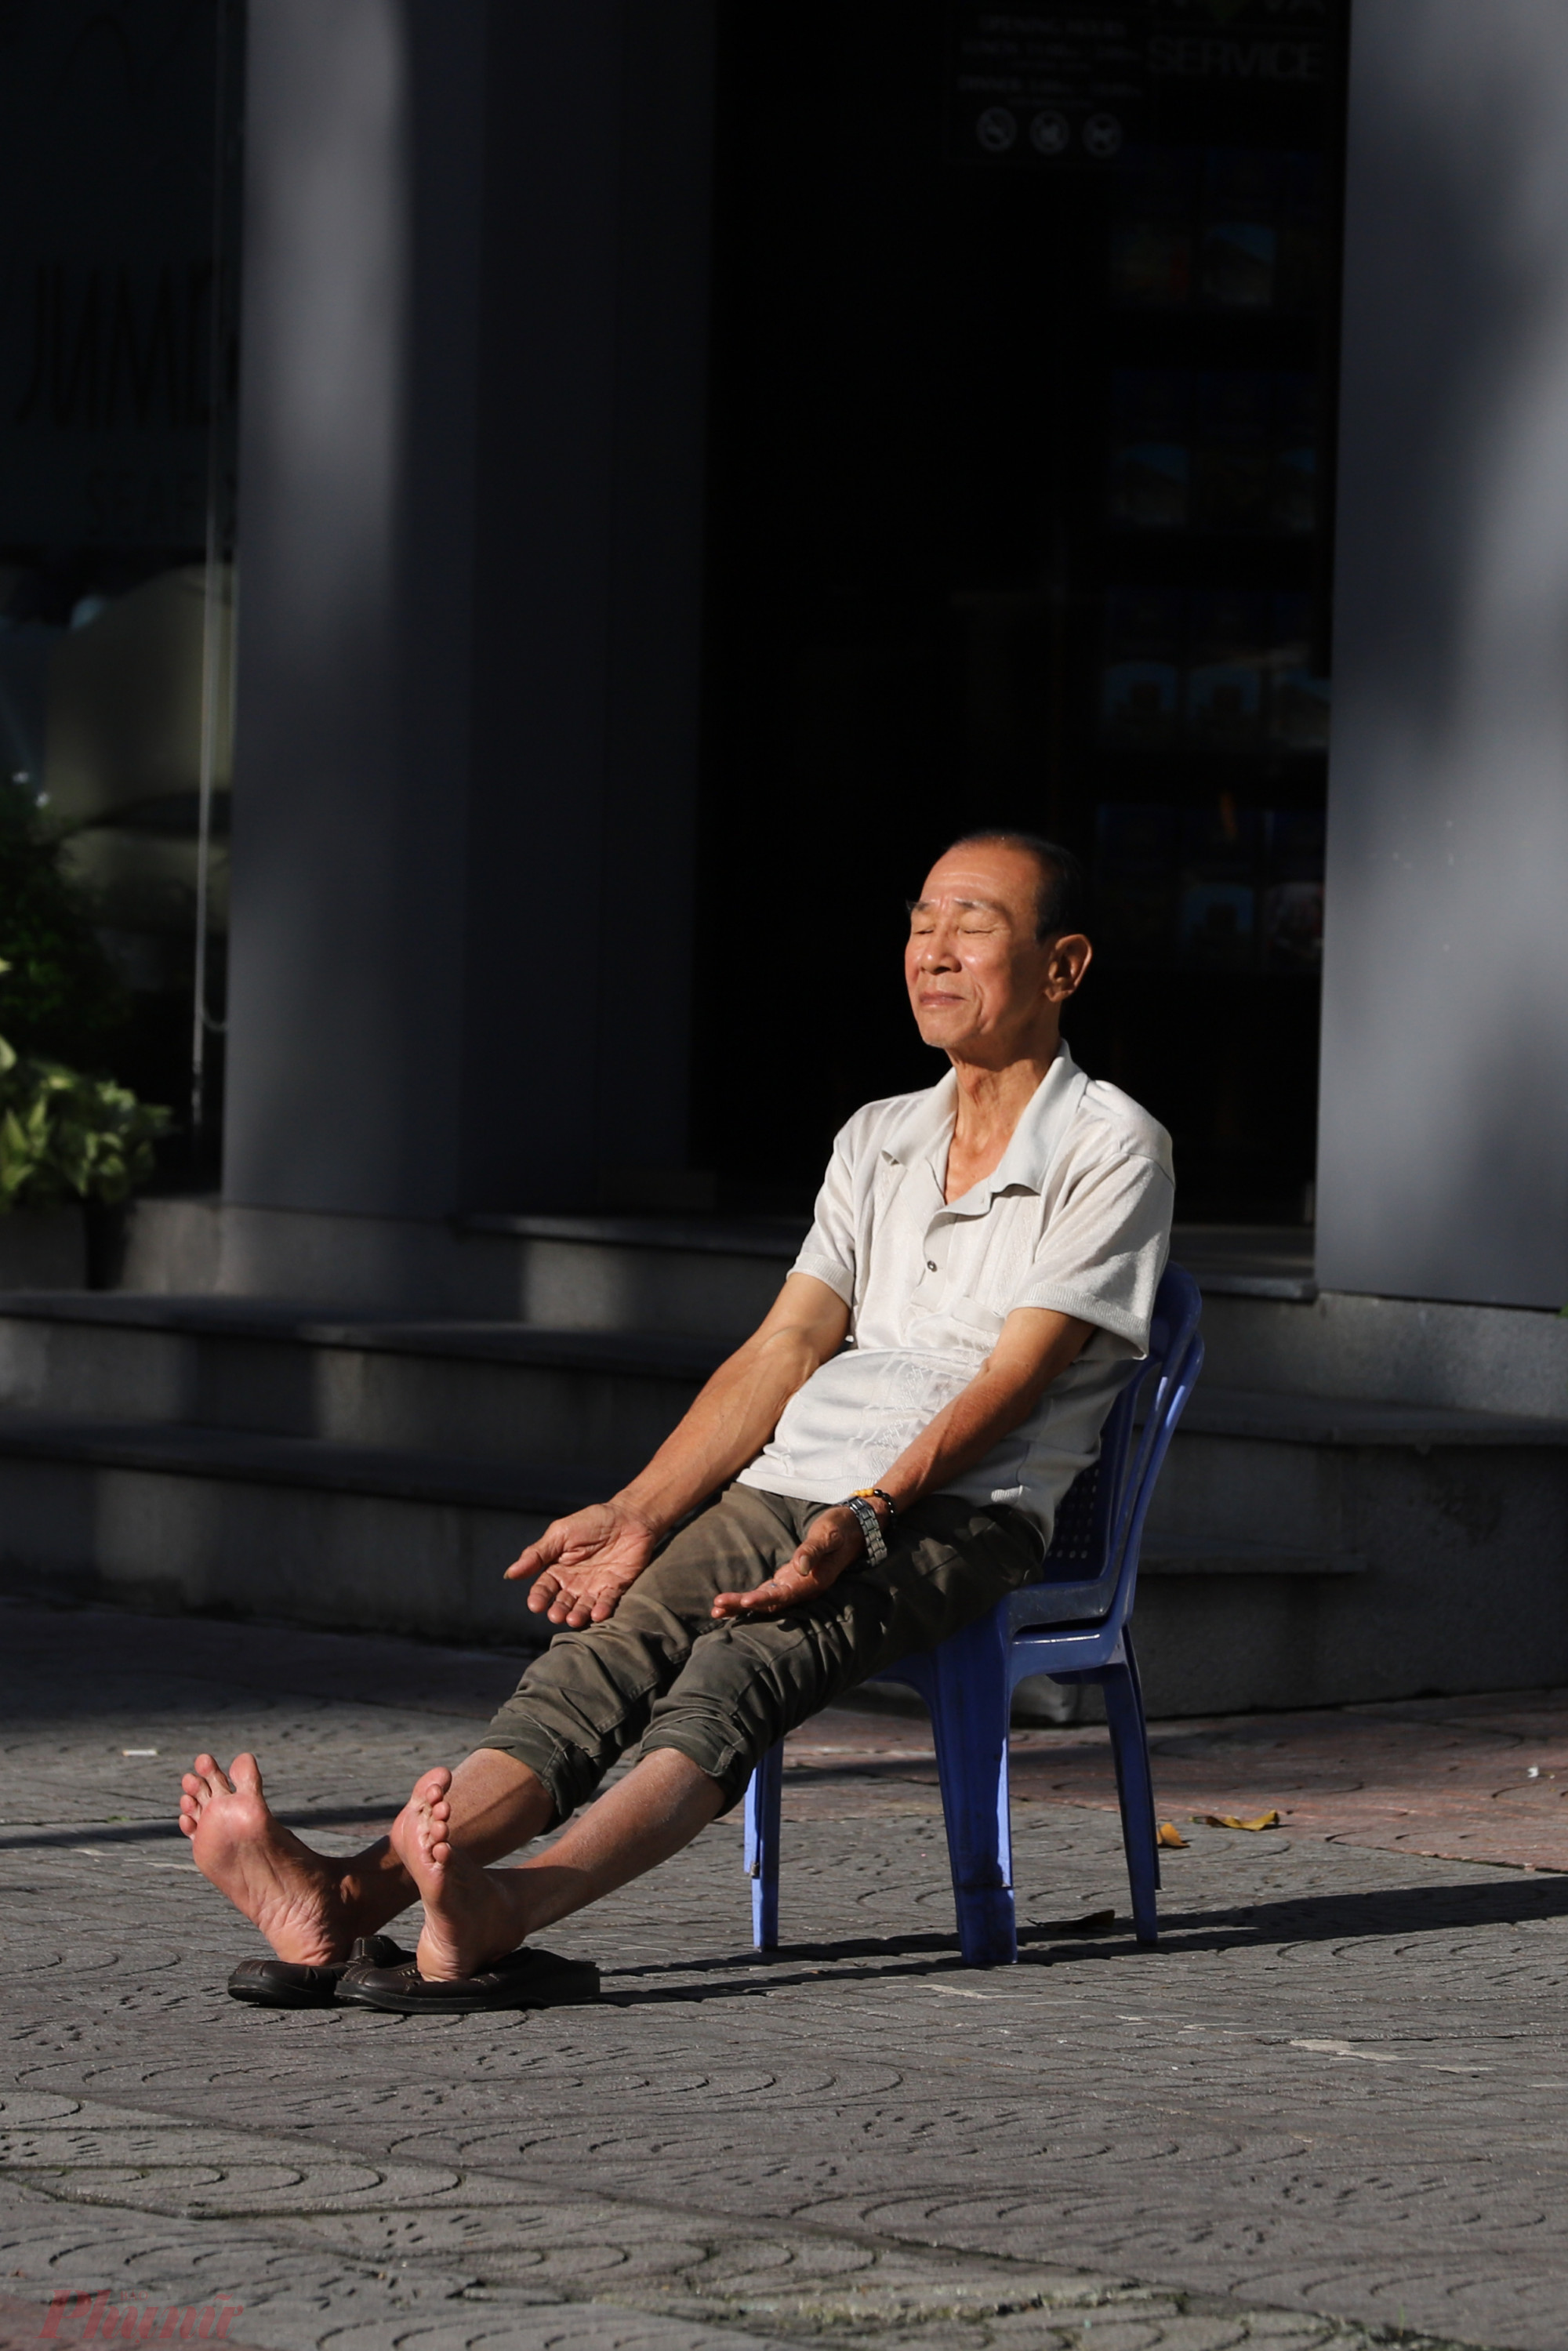 Khoảng hơn 7g sáng, trời bắt đầu hửng nắng, người đàn ông tranh thủ phơi nắng trước nhà trên đường Trần Hưng Đạo, quận 1.